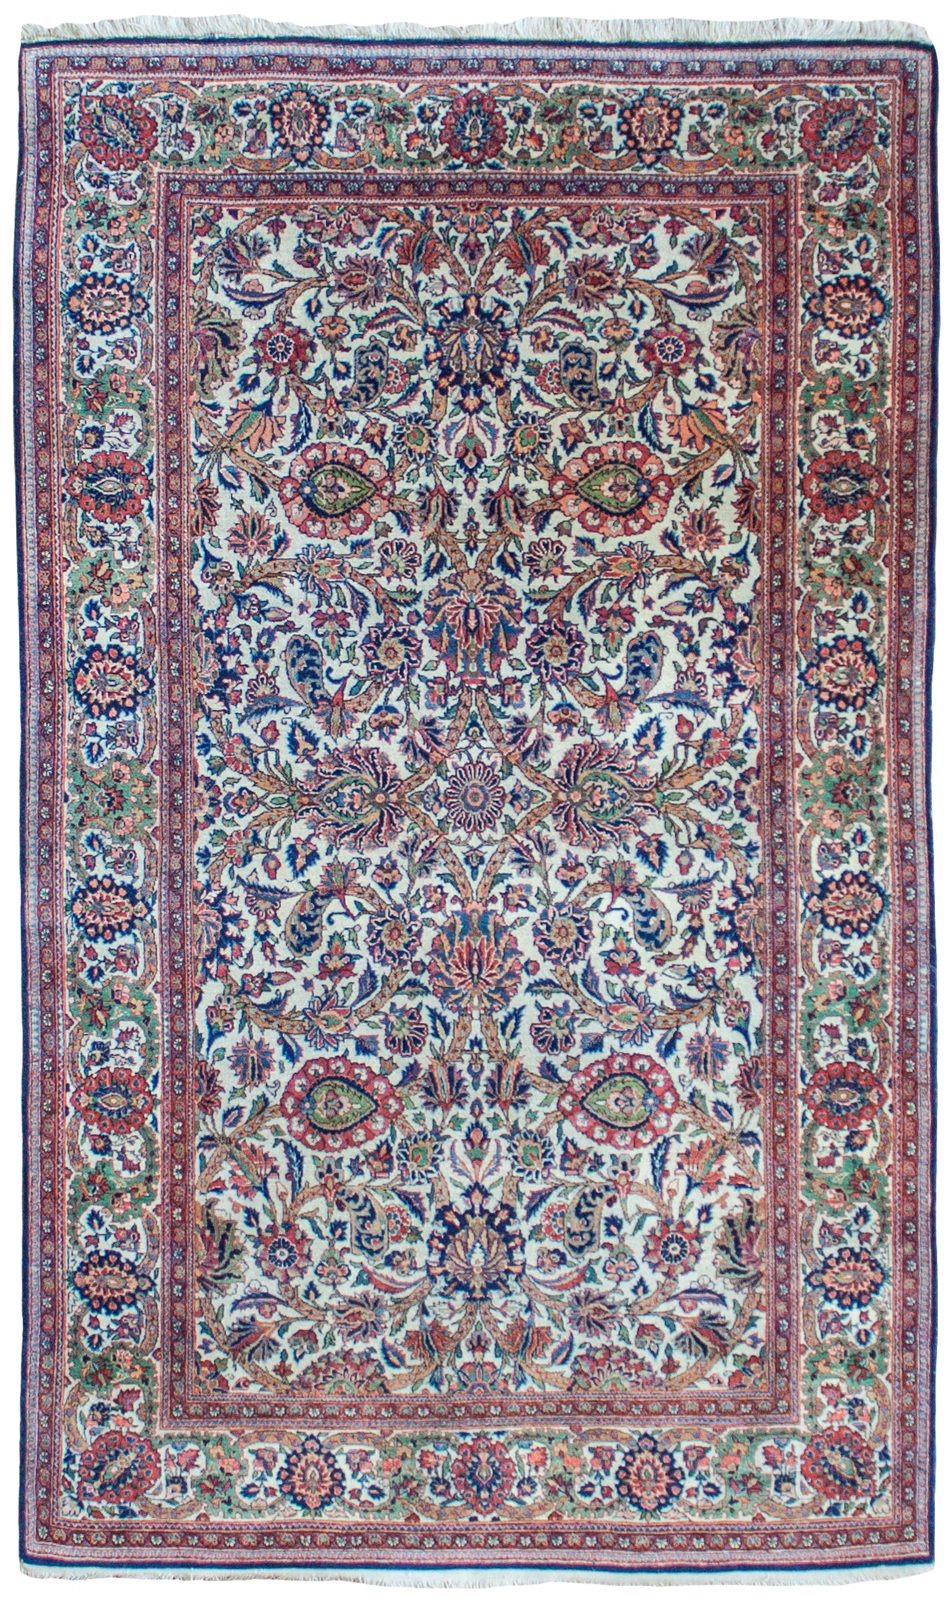 Antique Kashan rug, Persia - Farnham Antique Carpets